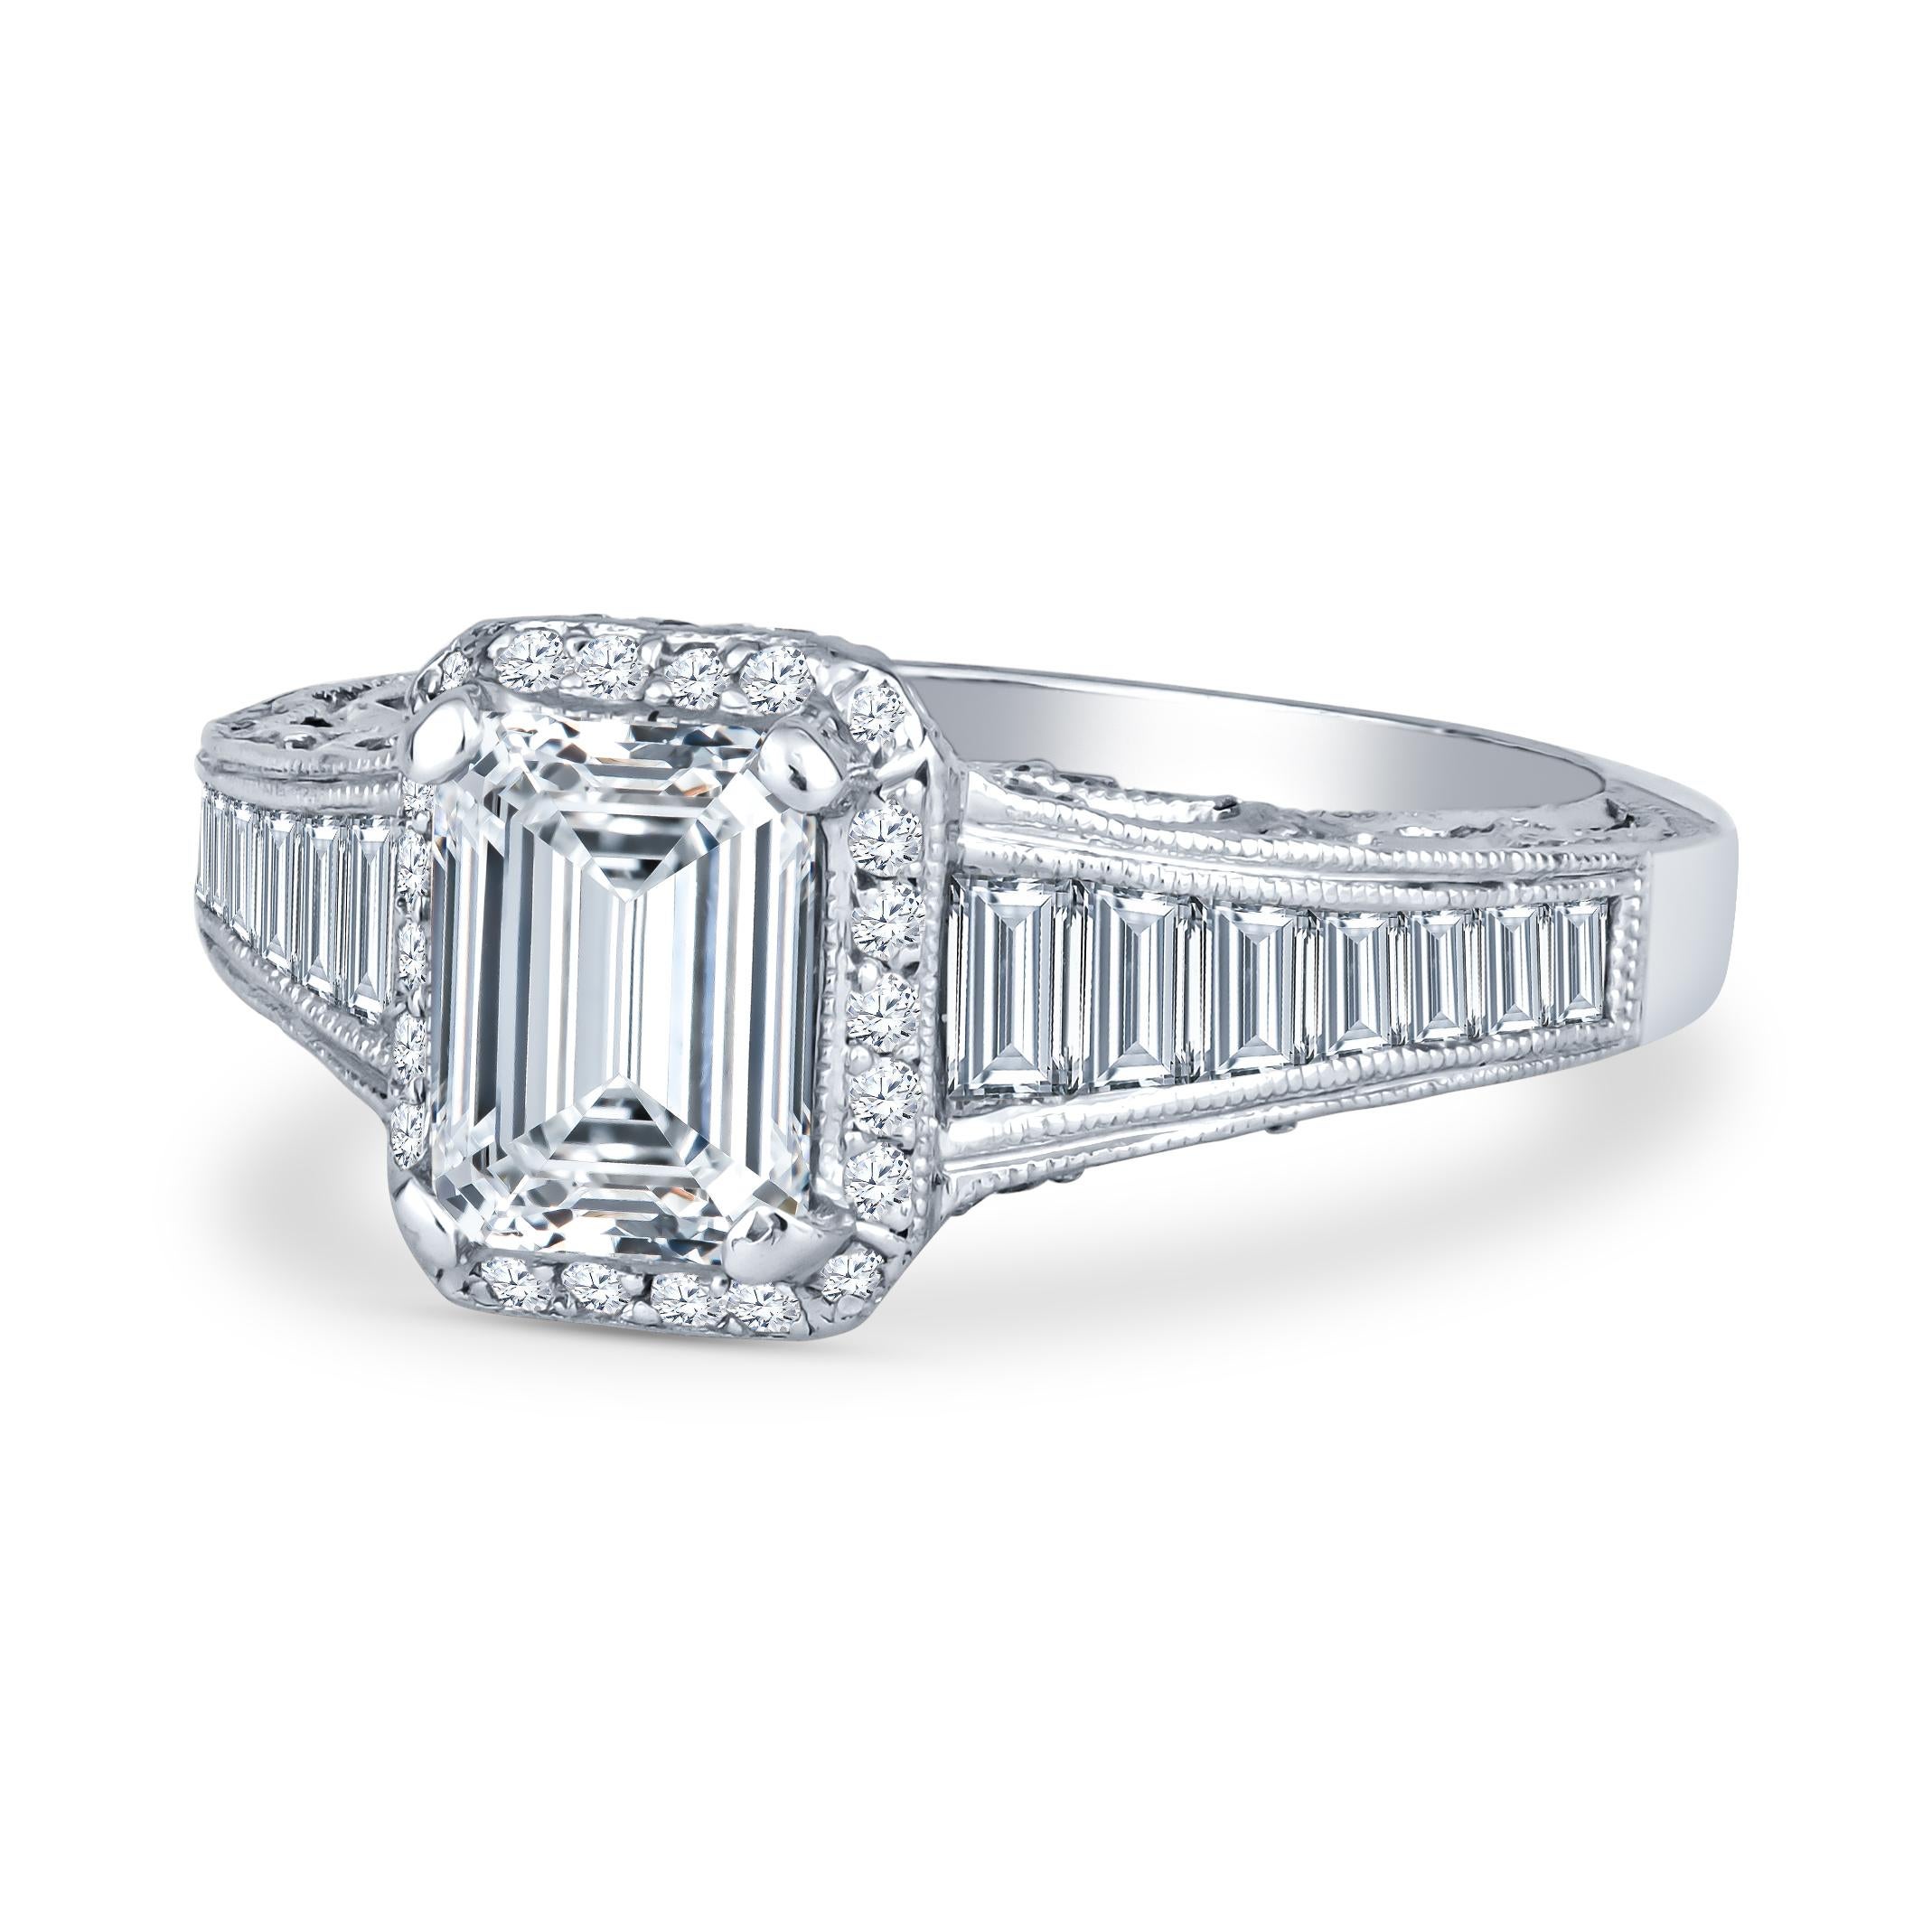 Diese atemberaubende Tacori Stück verfügt über einen 1,01ct Smaragd geschliffenen Diamanten Mittelstein (I SI2, GIA-Bericht # 5202042286), akzentuiert durch 1,35ct Gesamtgewicht in Baguette und Runde Diamanten geschliffen Seite Diamanten. Der Ring